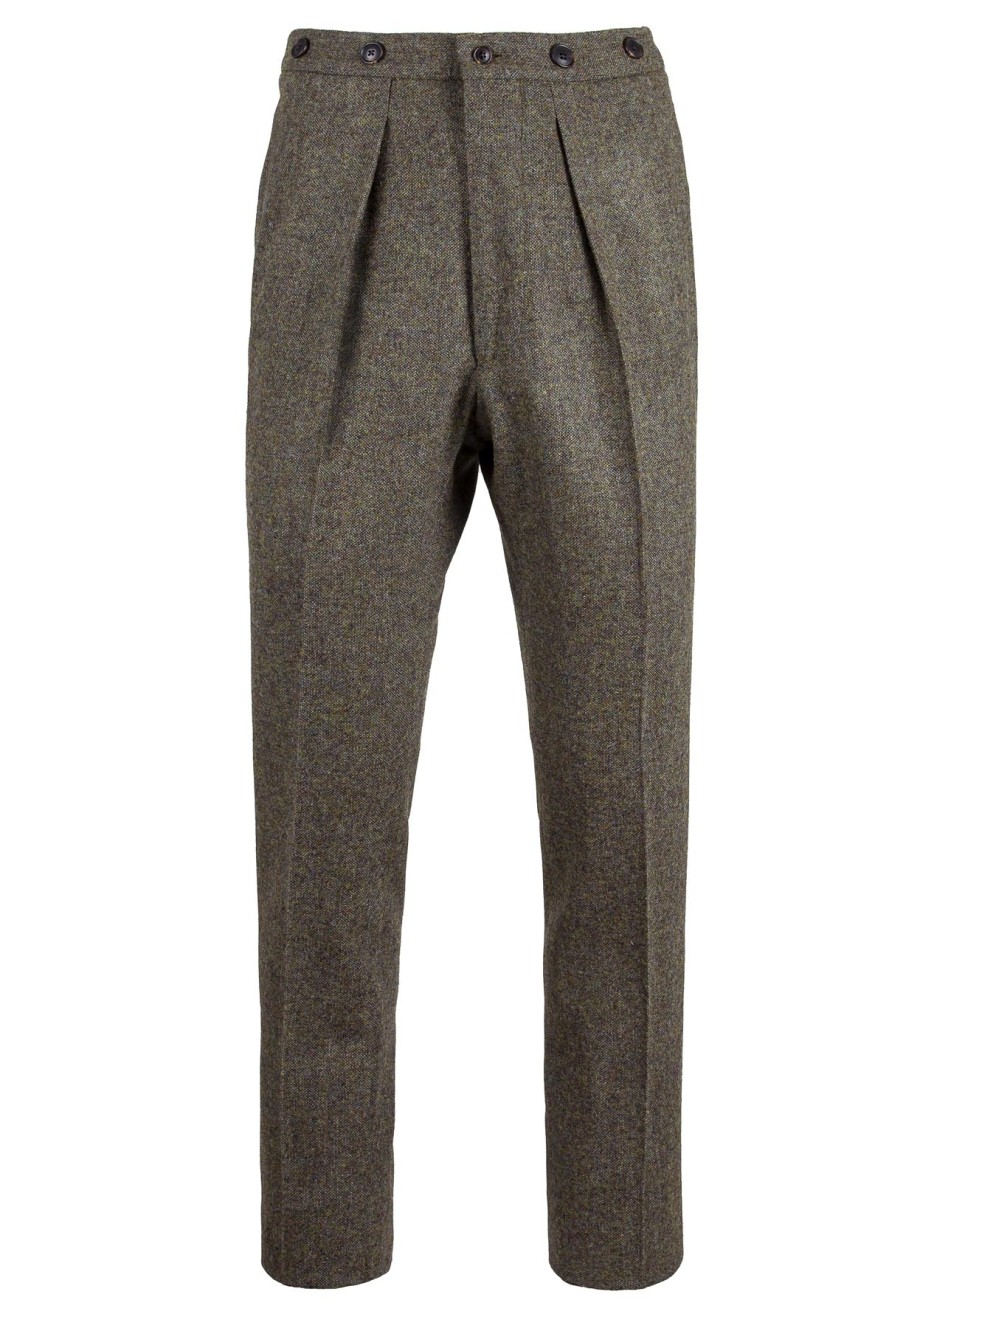 Womens Tweed Trousers 1920s Vintage Blinders Tan Brown Herringbone Tailored  Fit Buy Online  Happy Gentleman